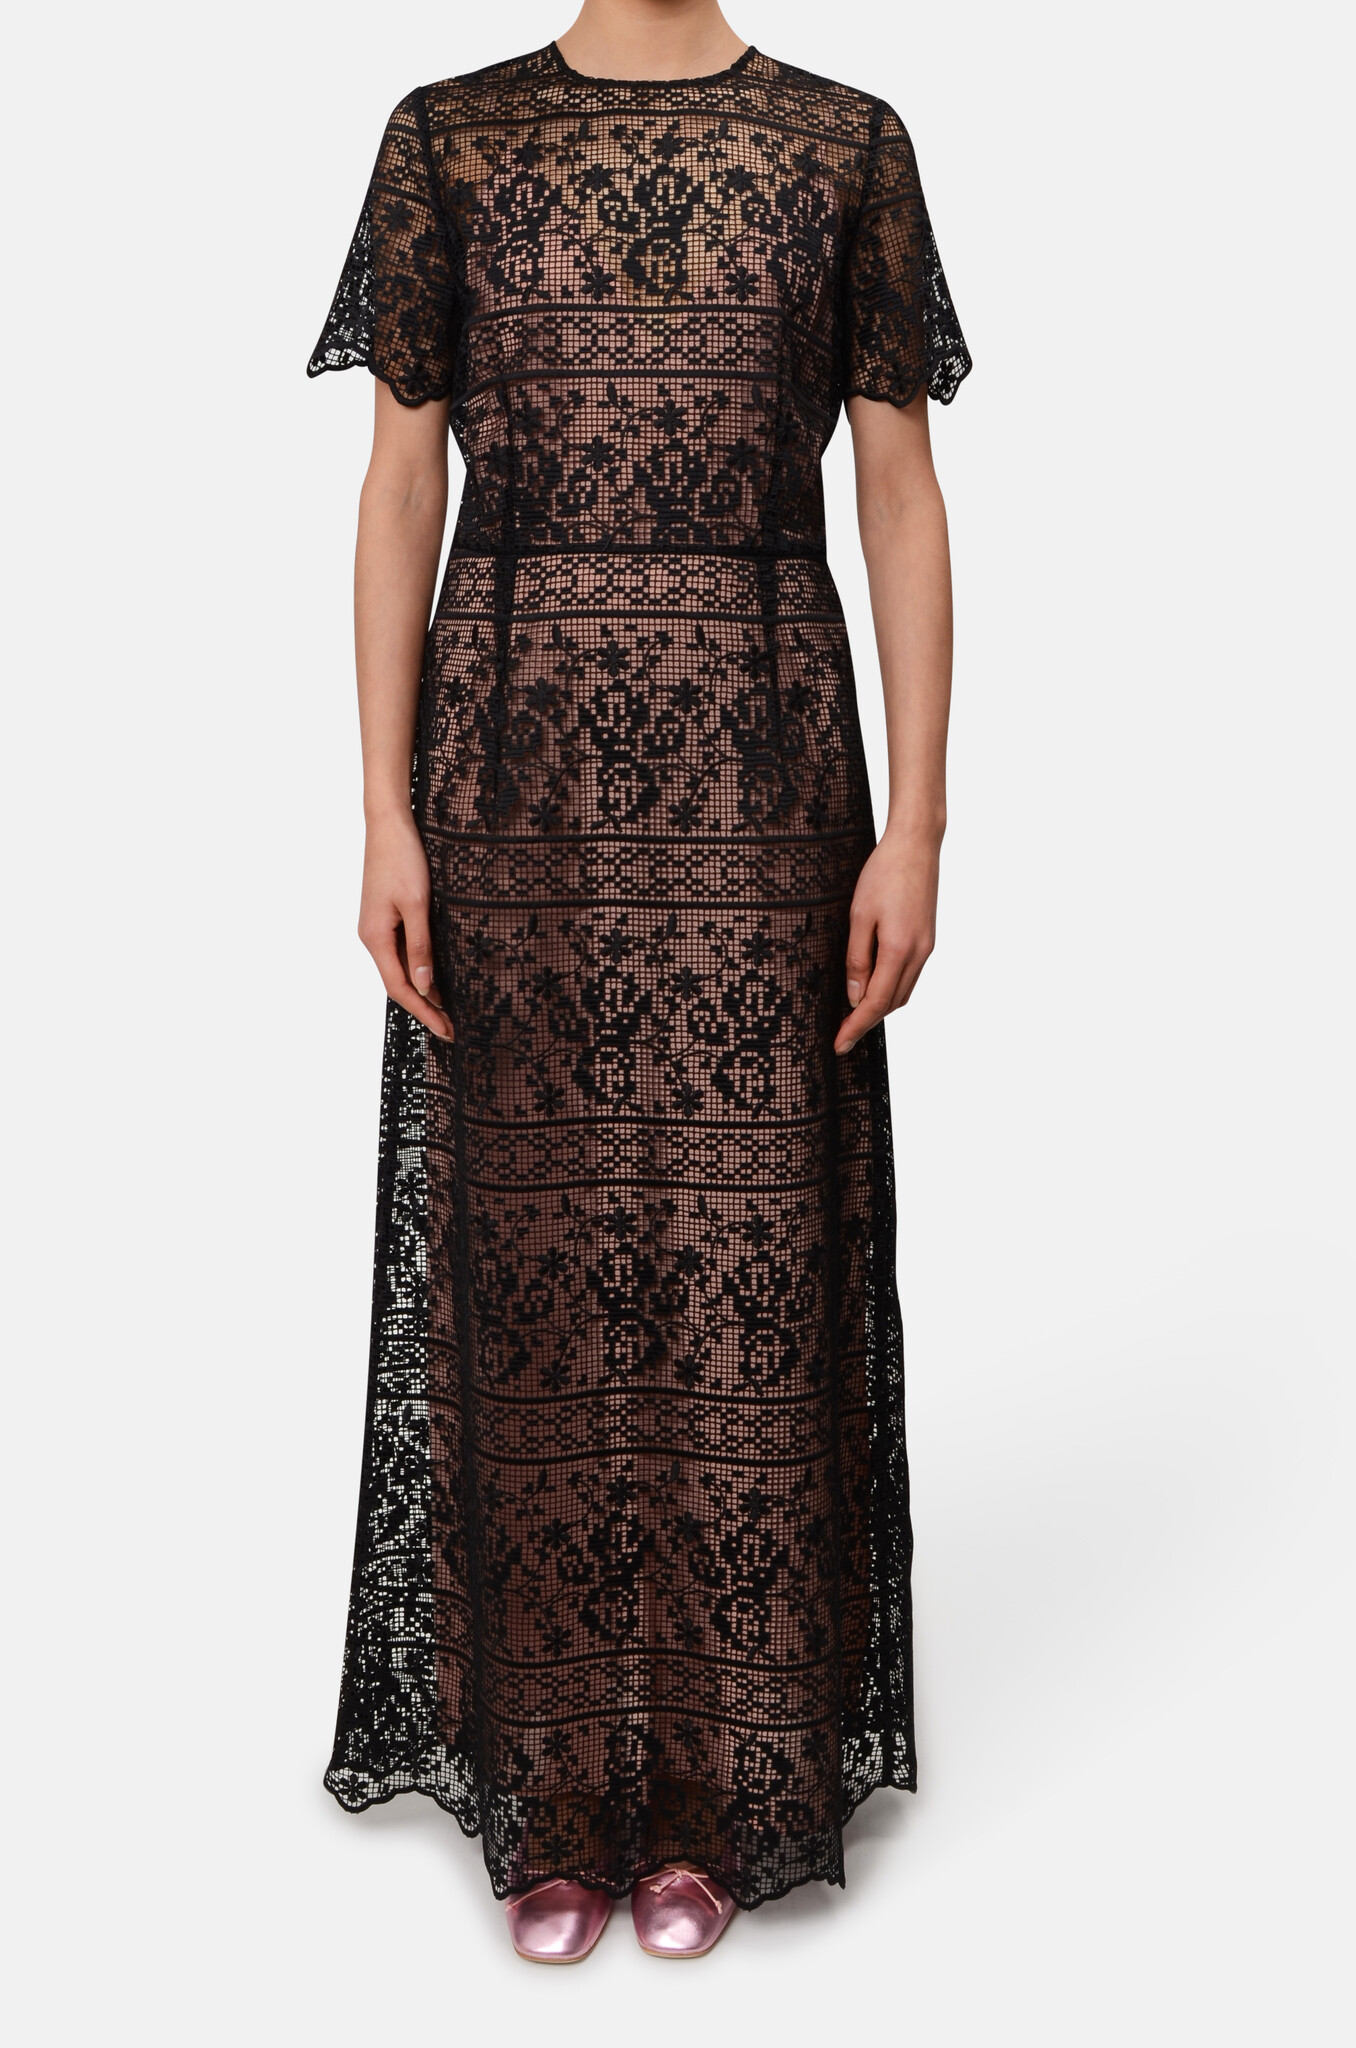 Crochet Lace Maxi Dress in Black-1